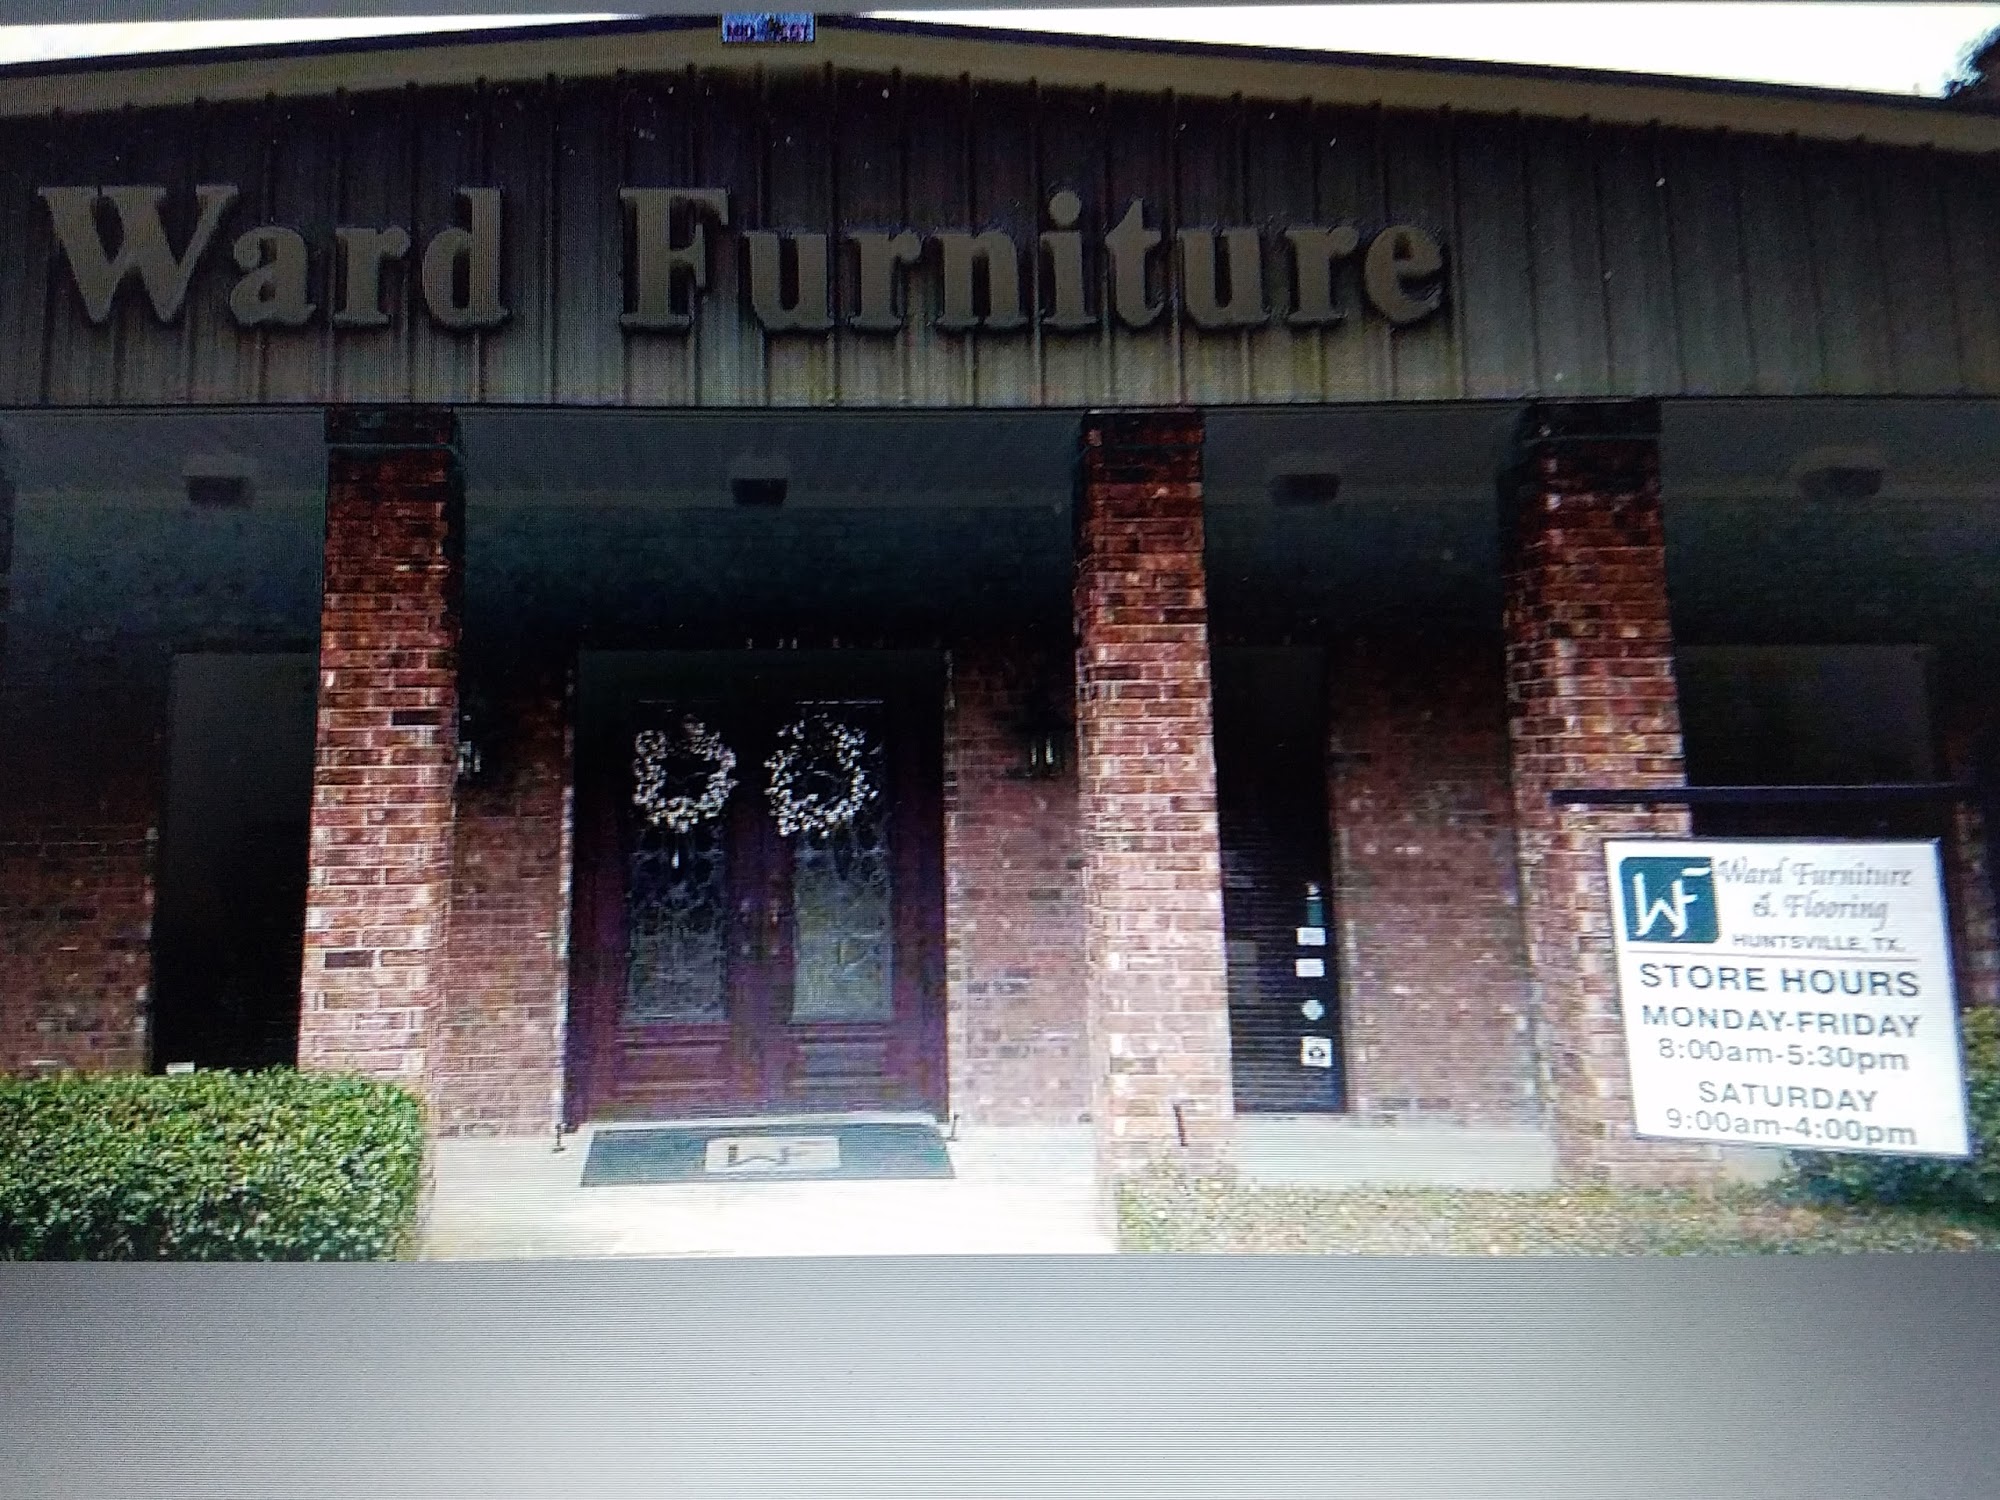 Ward Furniture